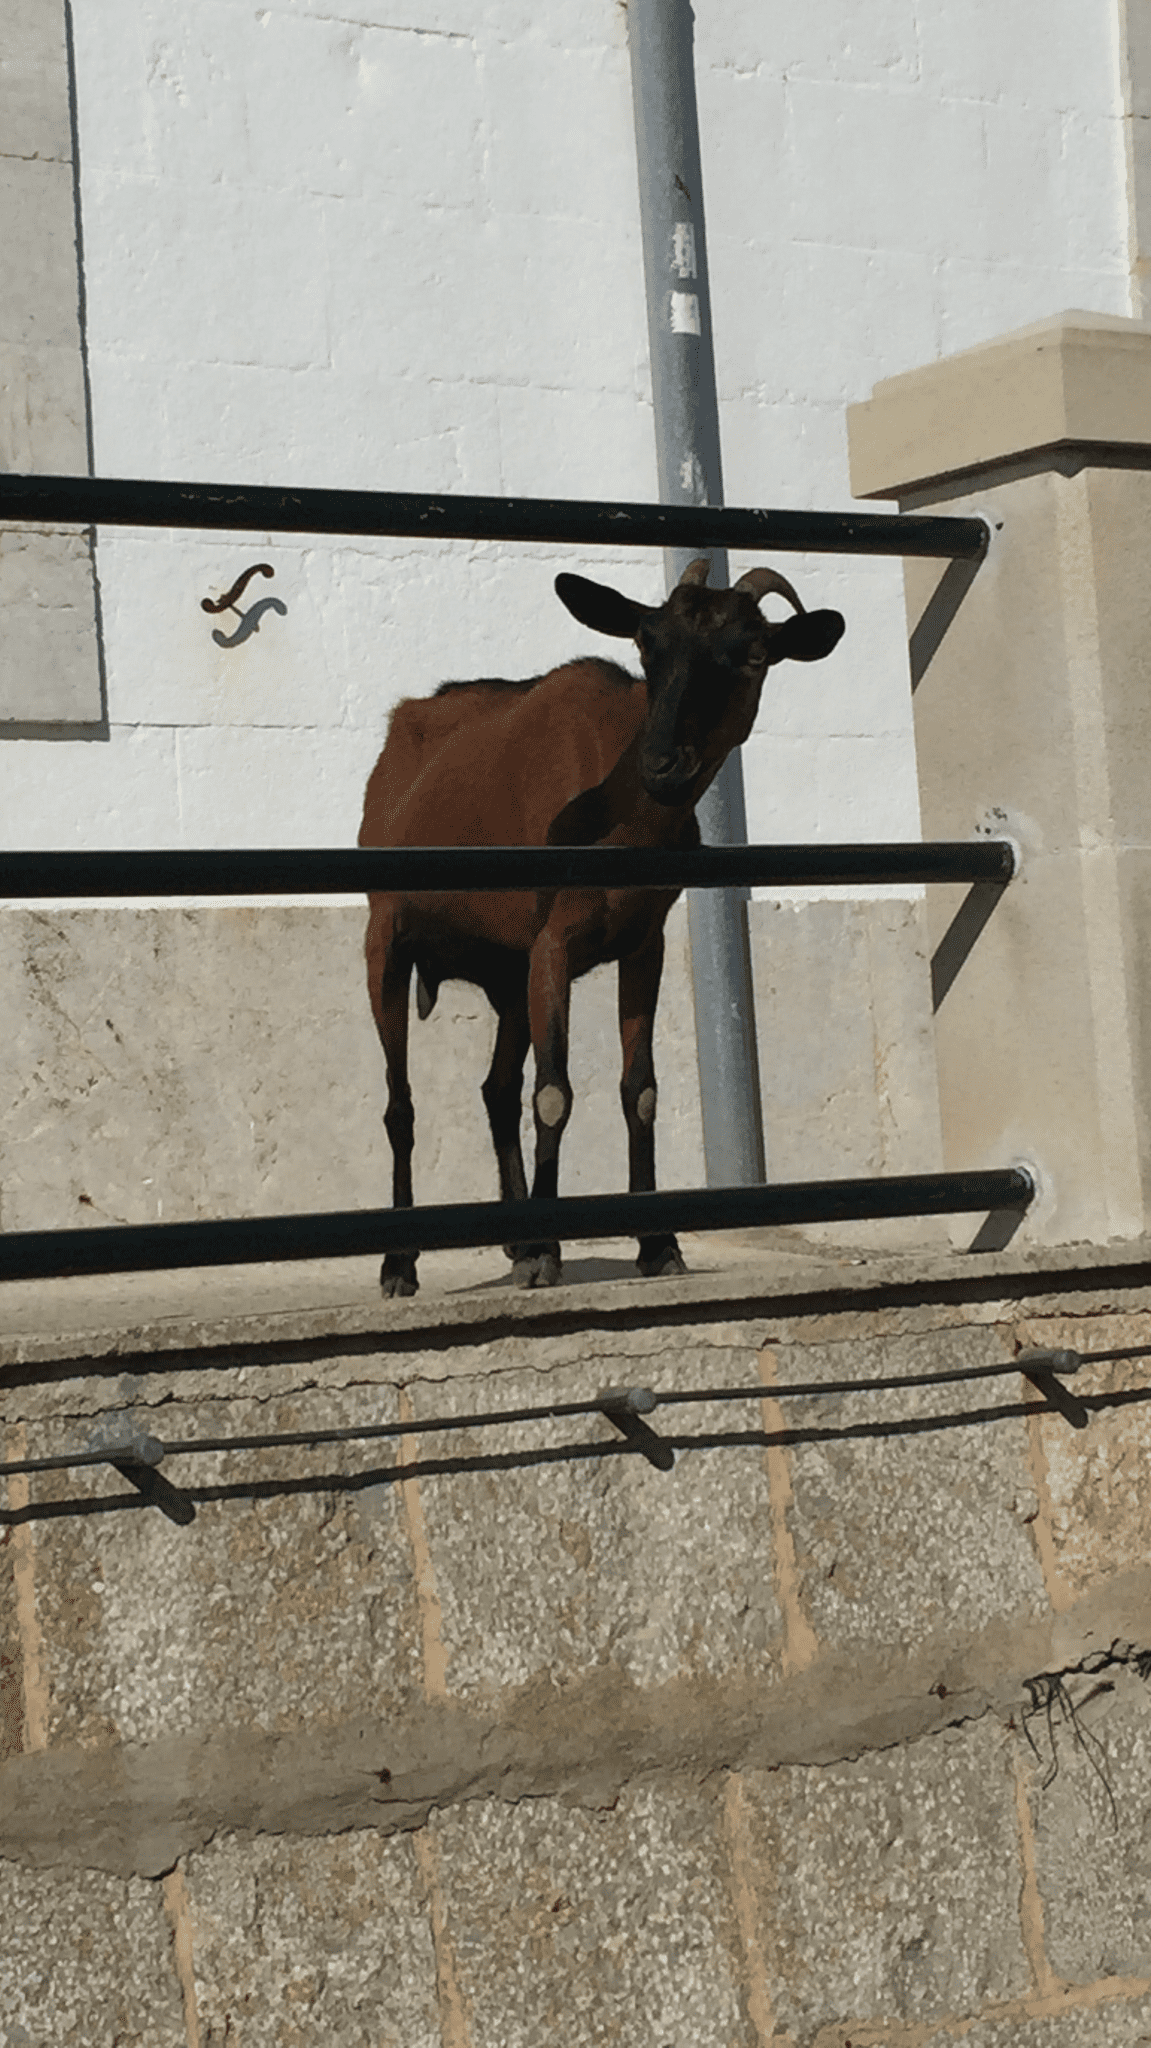 dzika, górska koza przy latarni morskiej na Majorce